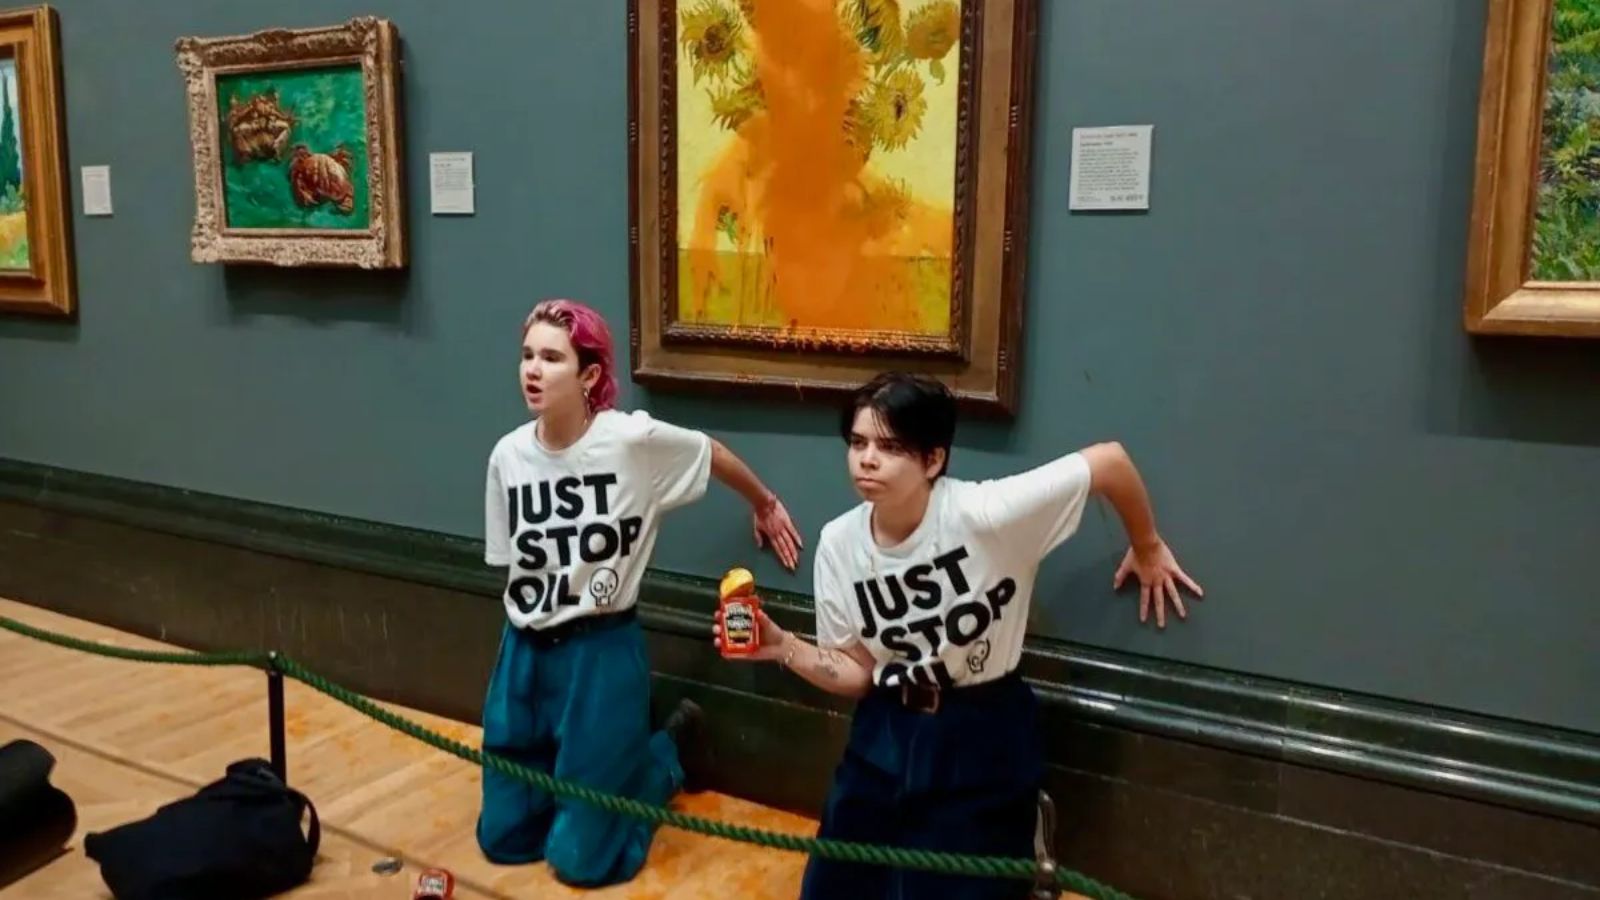 Activistas arrojan sopa sobre cuadro Los Girasoles de Van Gogh